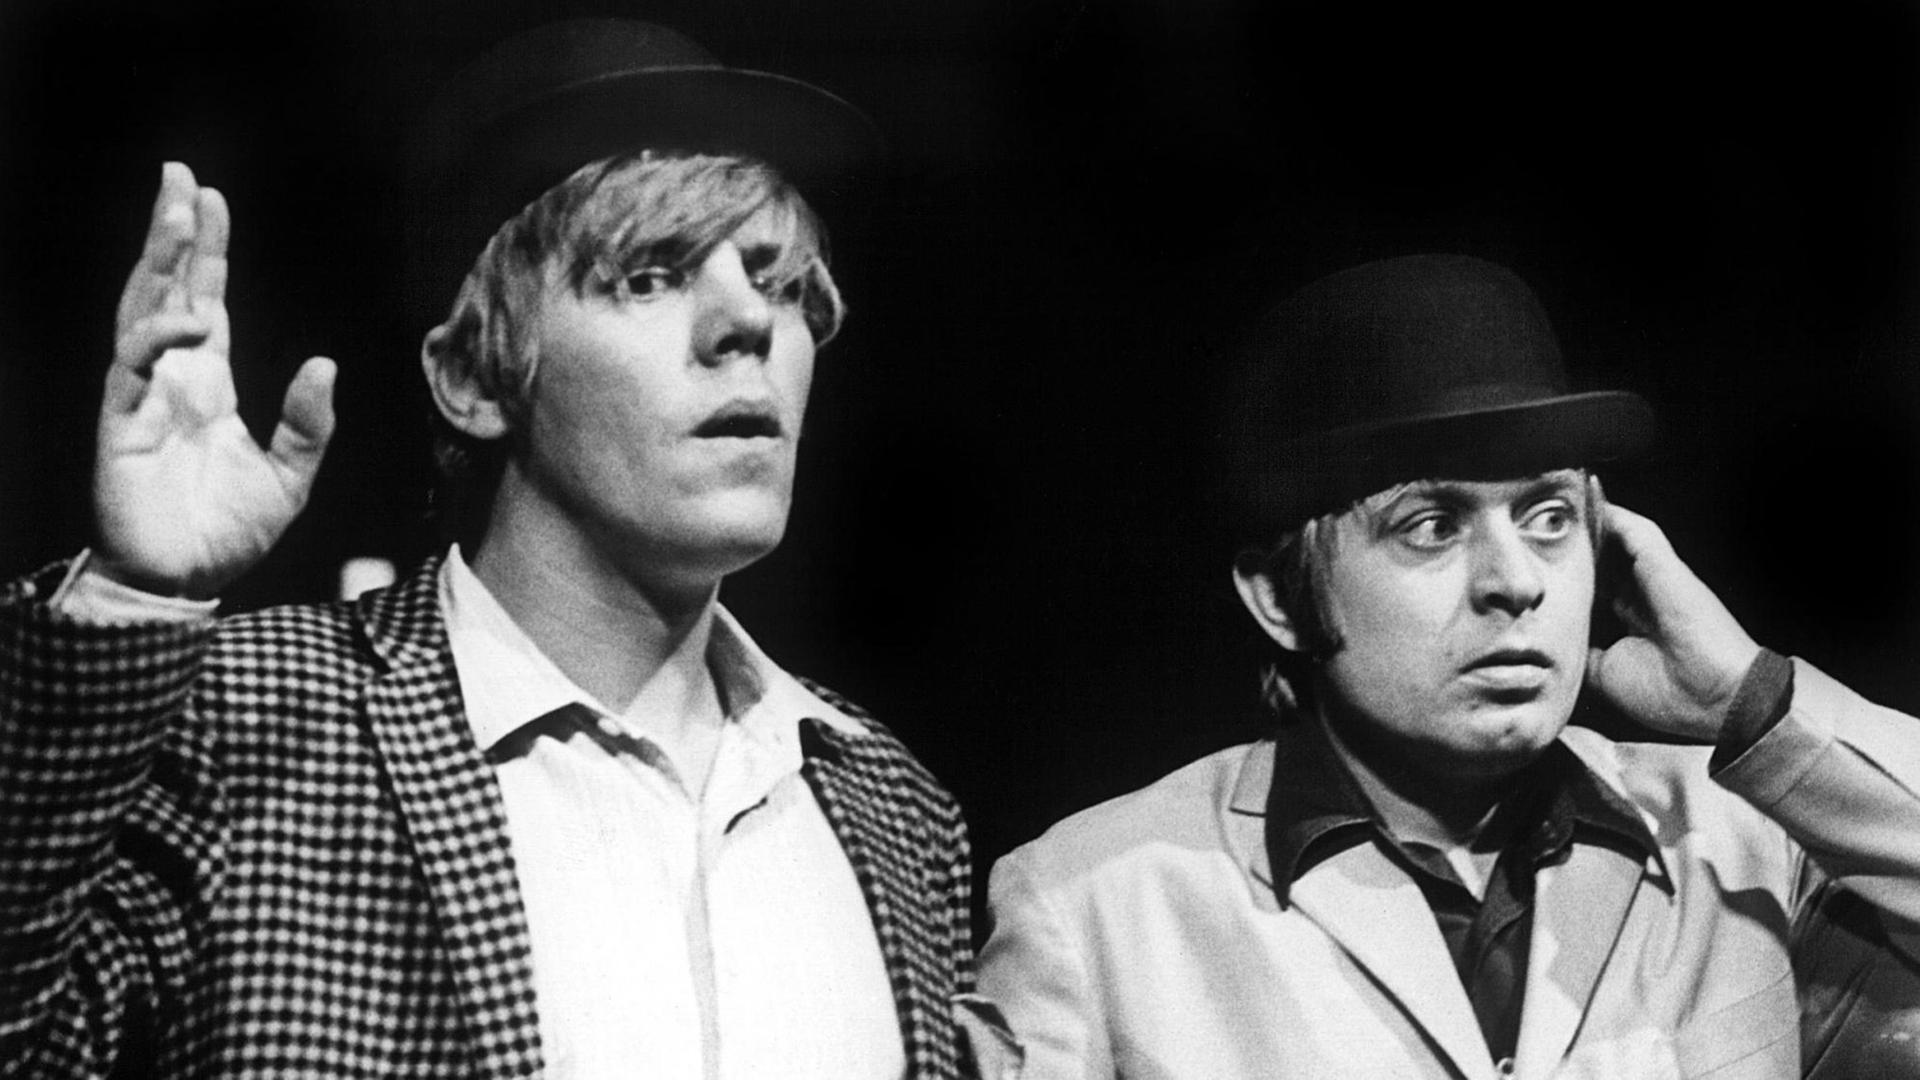 Peter Striebeck (l) und Ralf Schermuly als Wladimir und Estragon in einer Szene des Theaterstücks "Warten auf Godot" von Samuel Beckett am 18.10.1972 bei Proben im Hamburger Thalia-Theater.